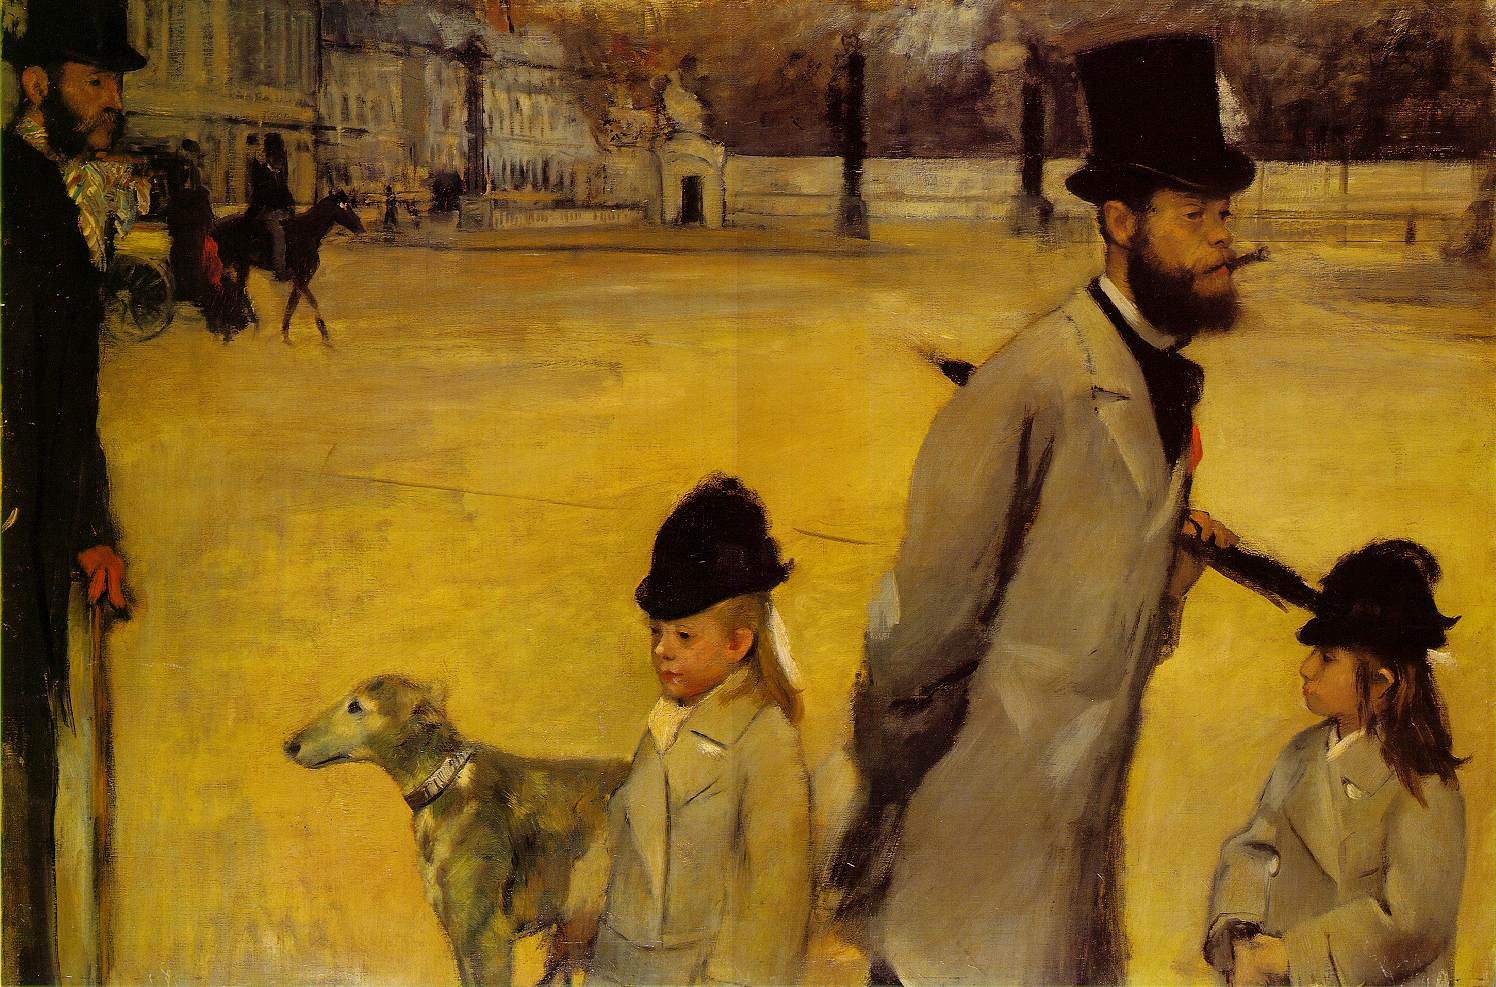 Edgar+Degas-1834-1917 (575).jpg